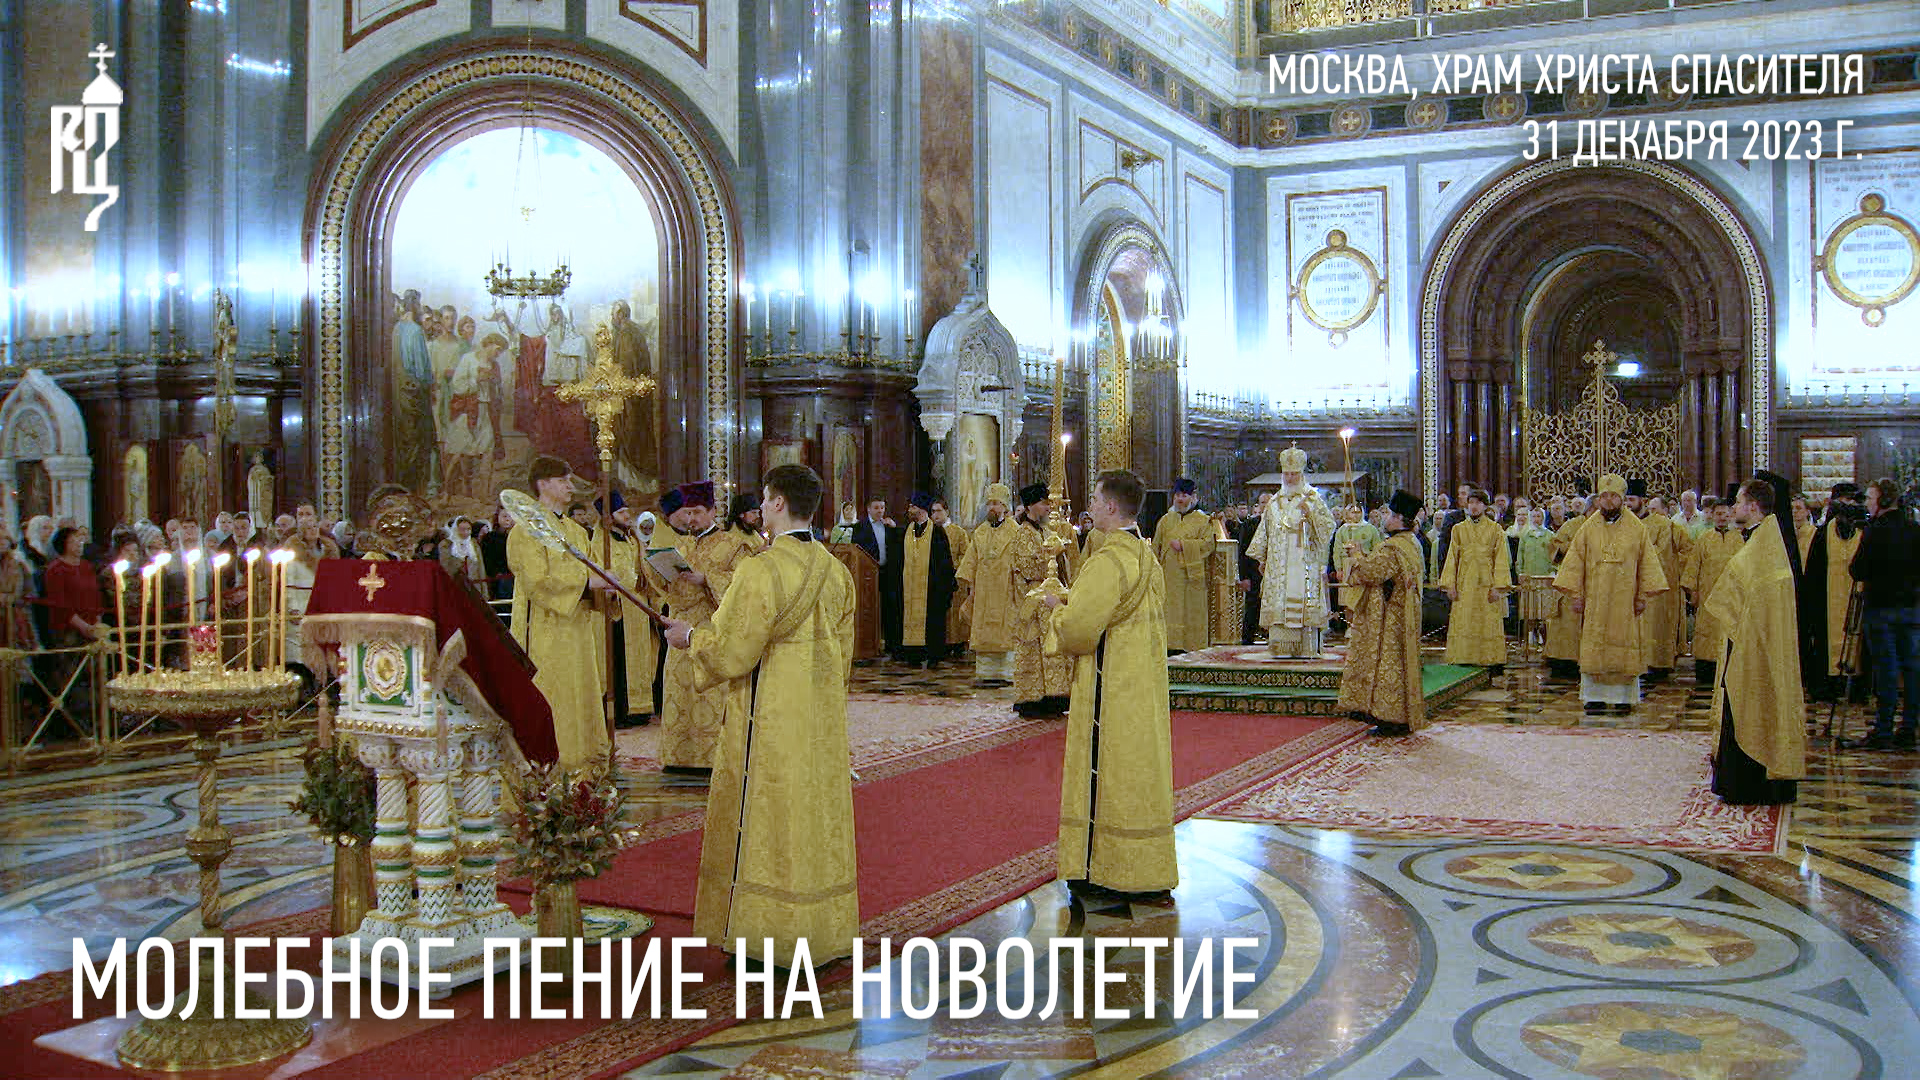 В канун Нового года Святейший Патриарх Кирилл совершил молебное пение на новолетие